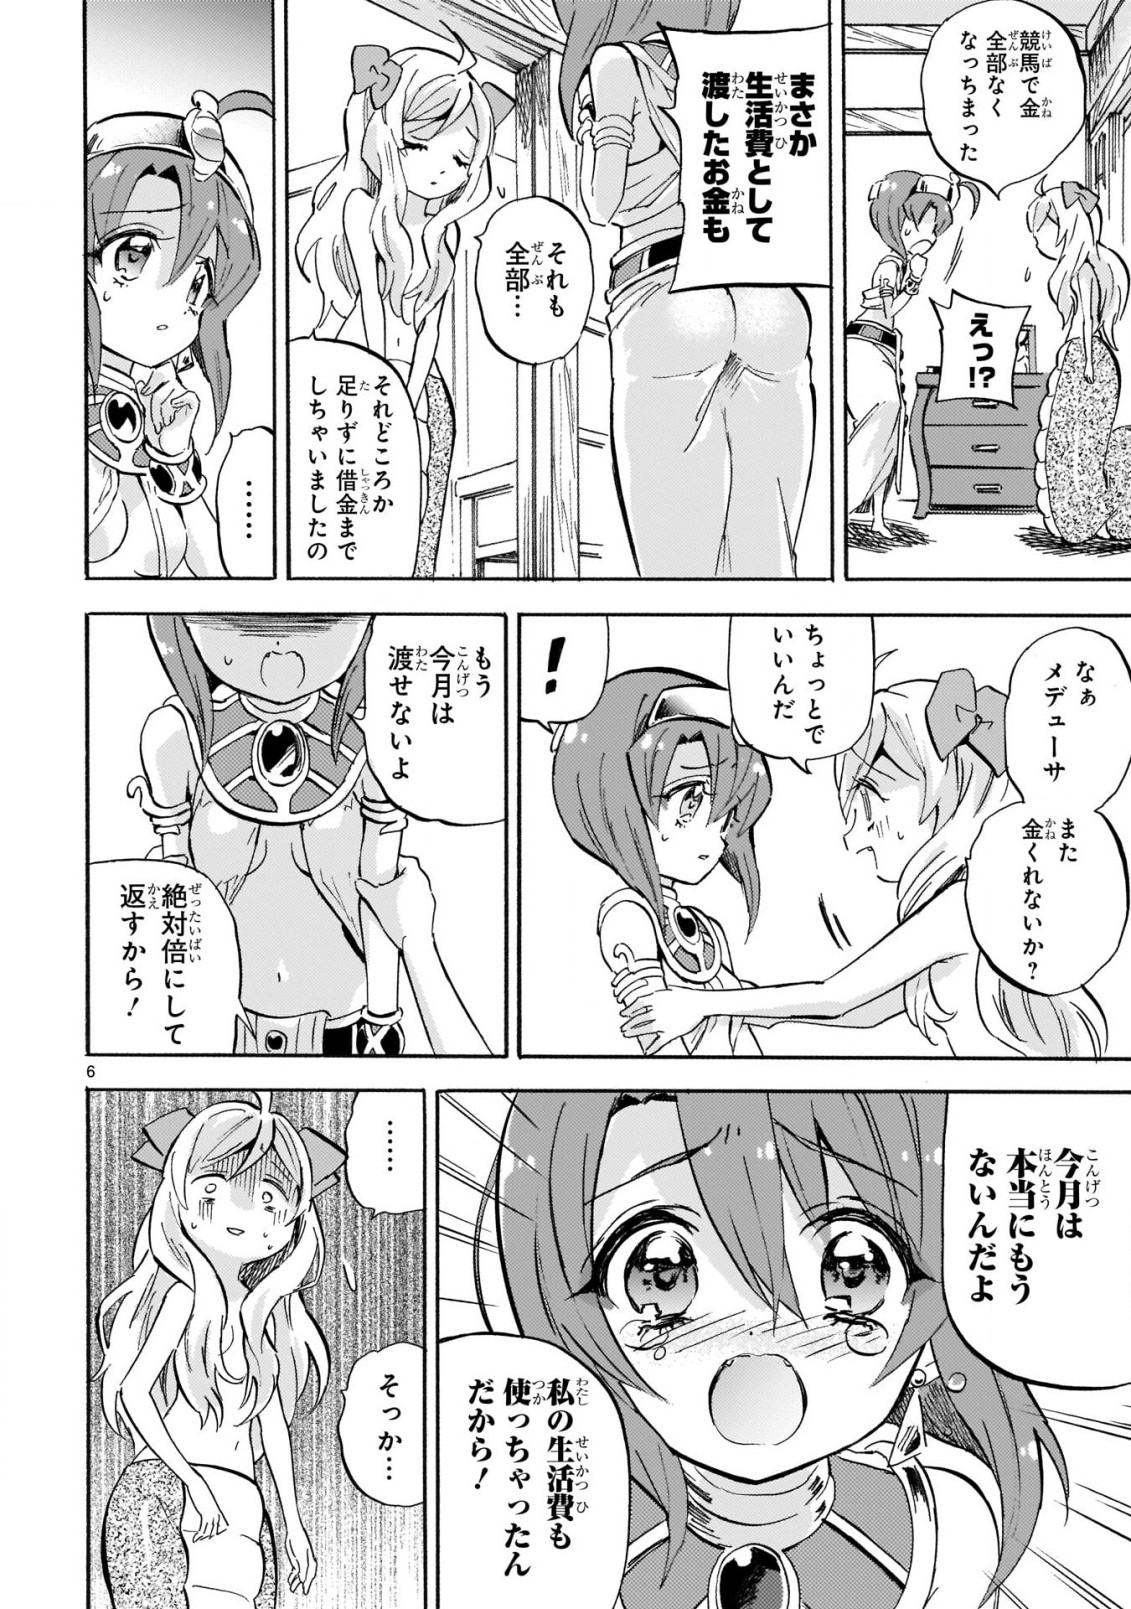 Jashin-chan Dropkick - Chapter 224 - Page 7